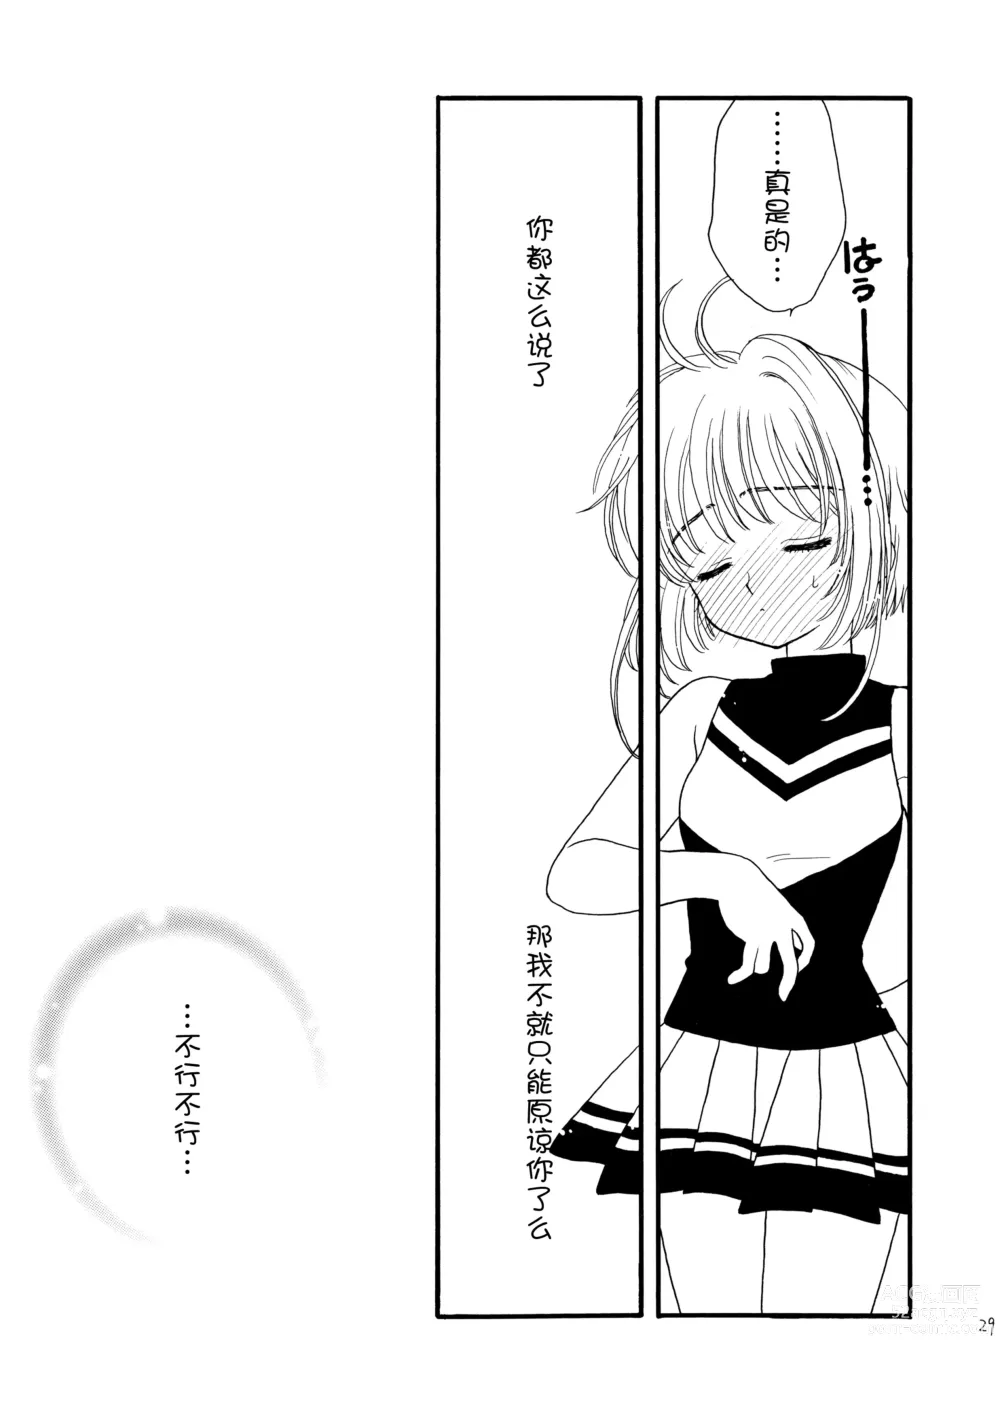 Page 29 of doujinshi Hitorijime